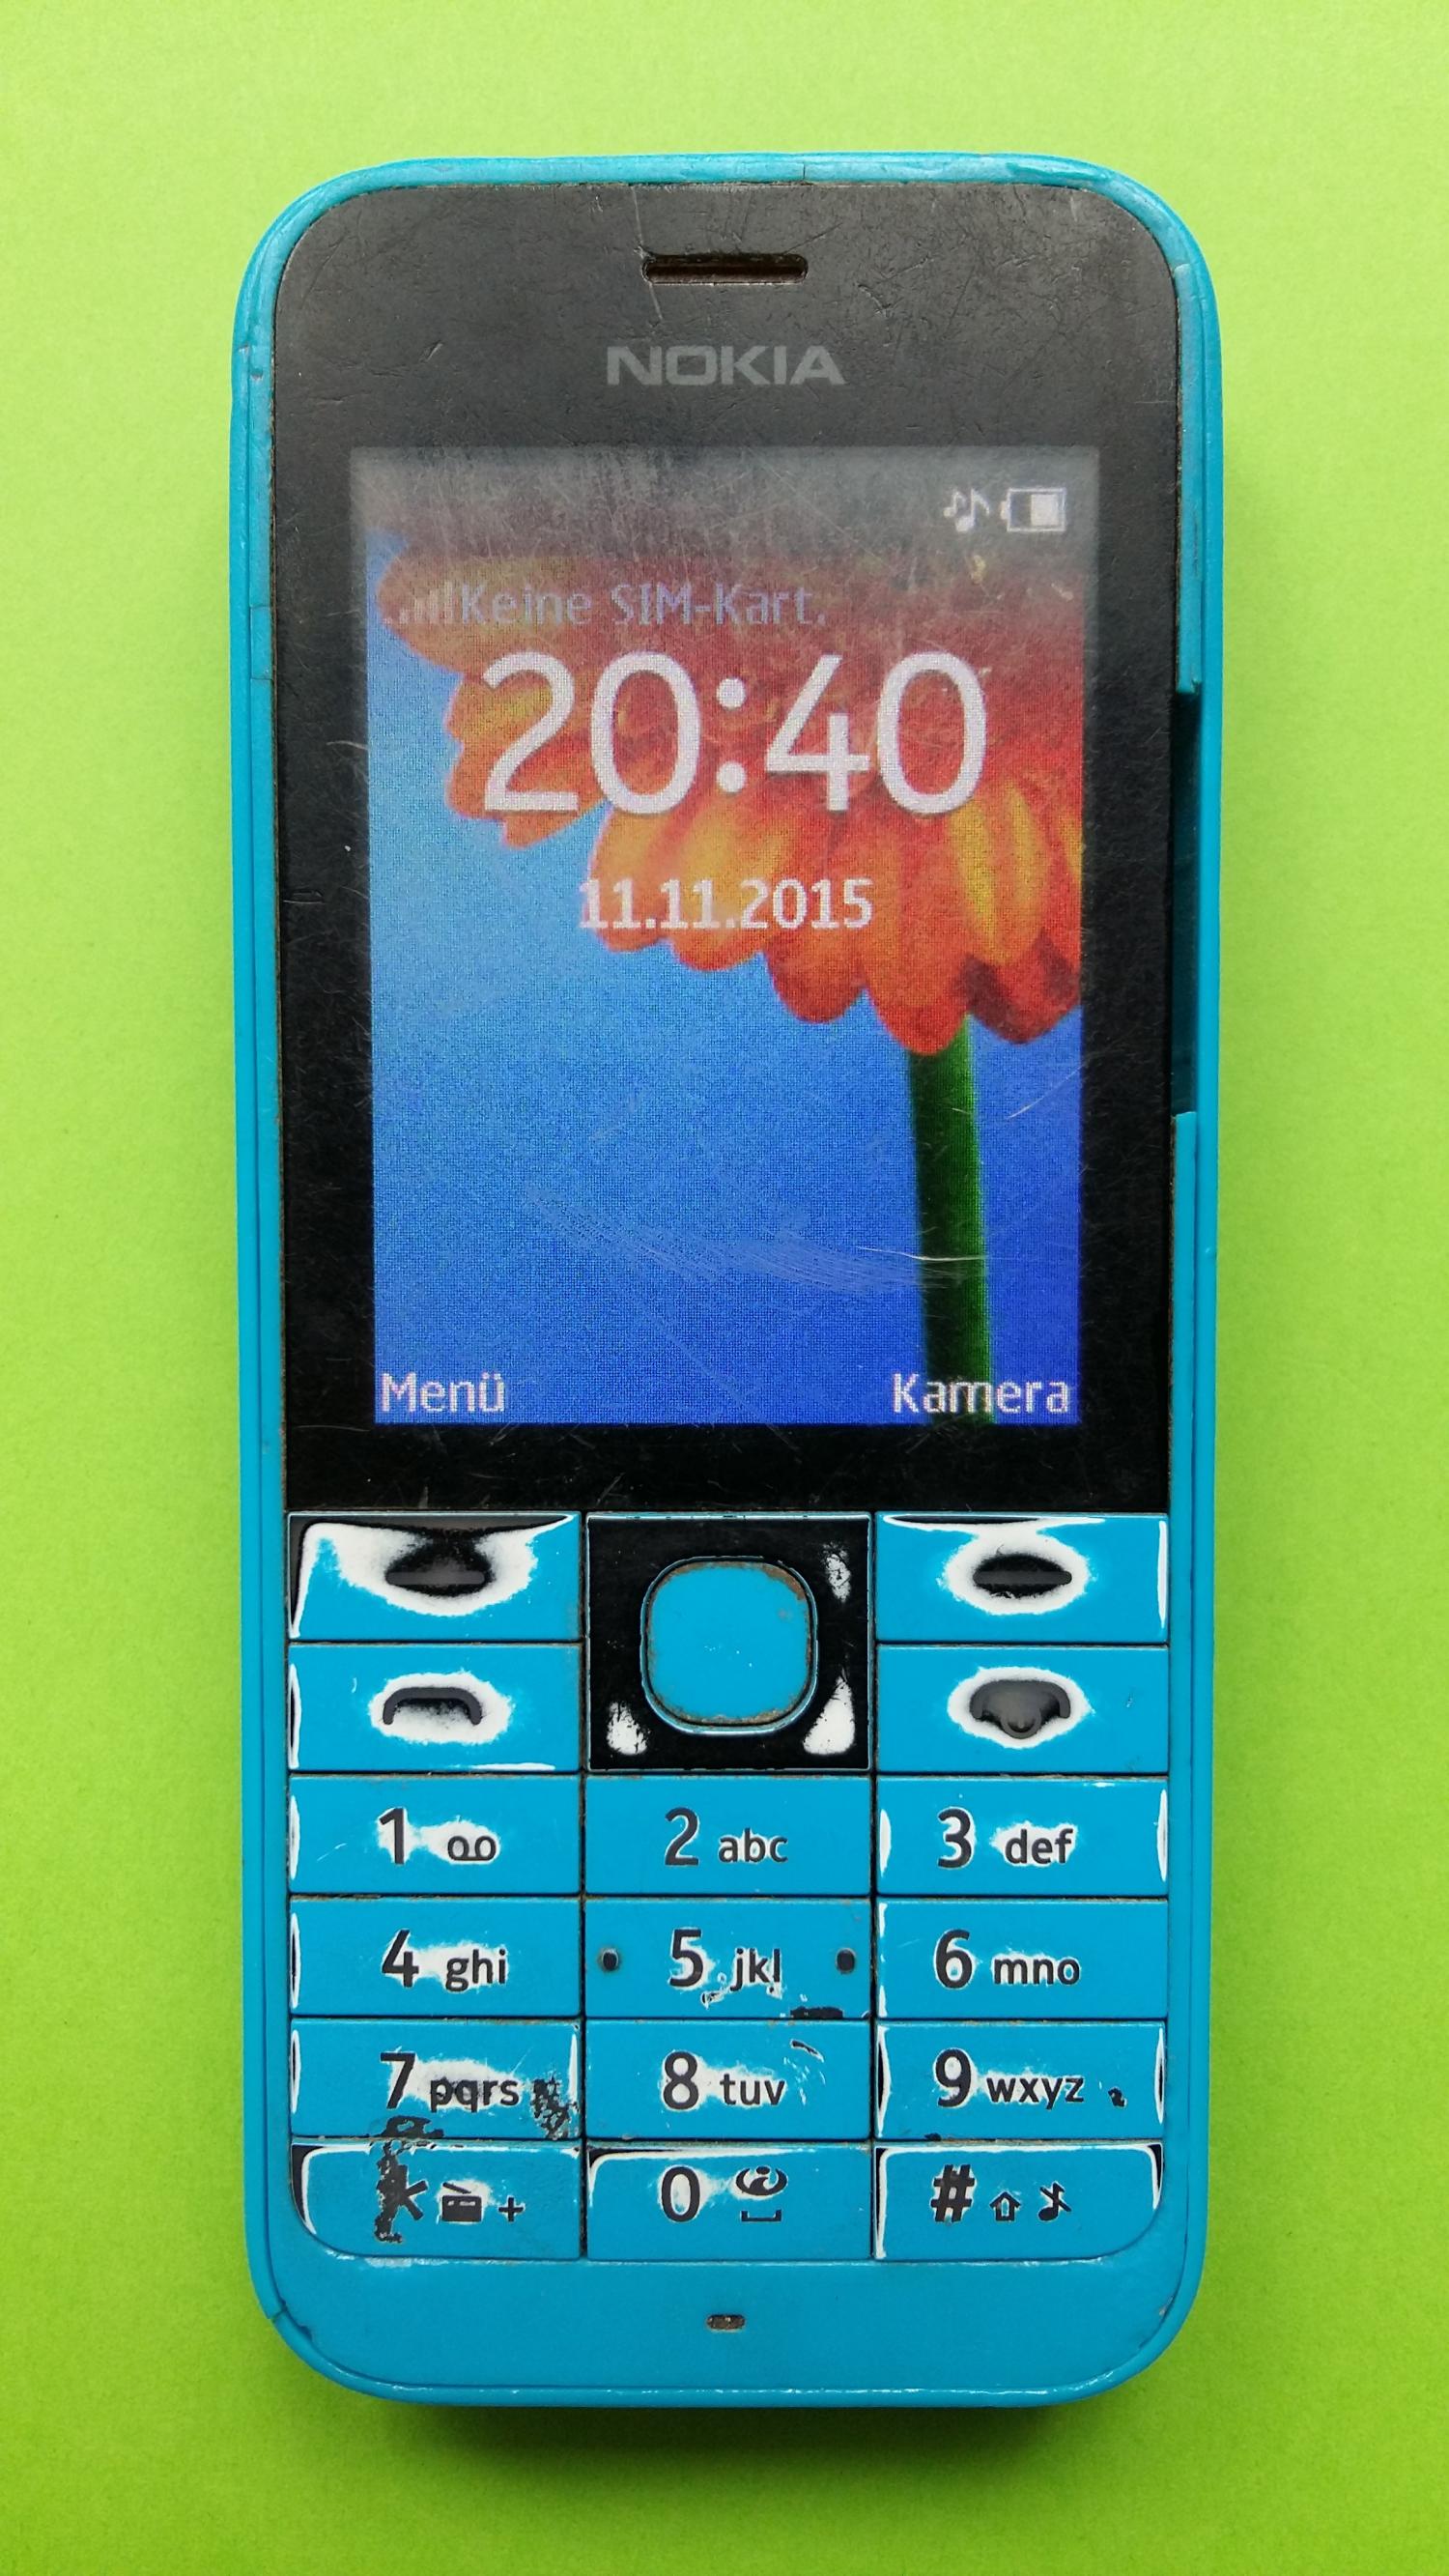 image-7300886-Nokia 220 (1)1.jpg